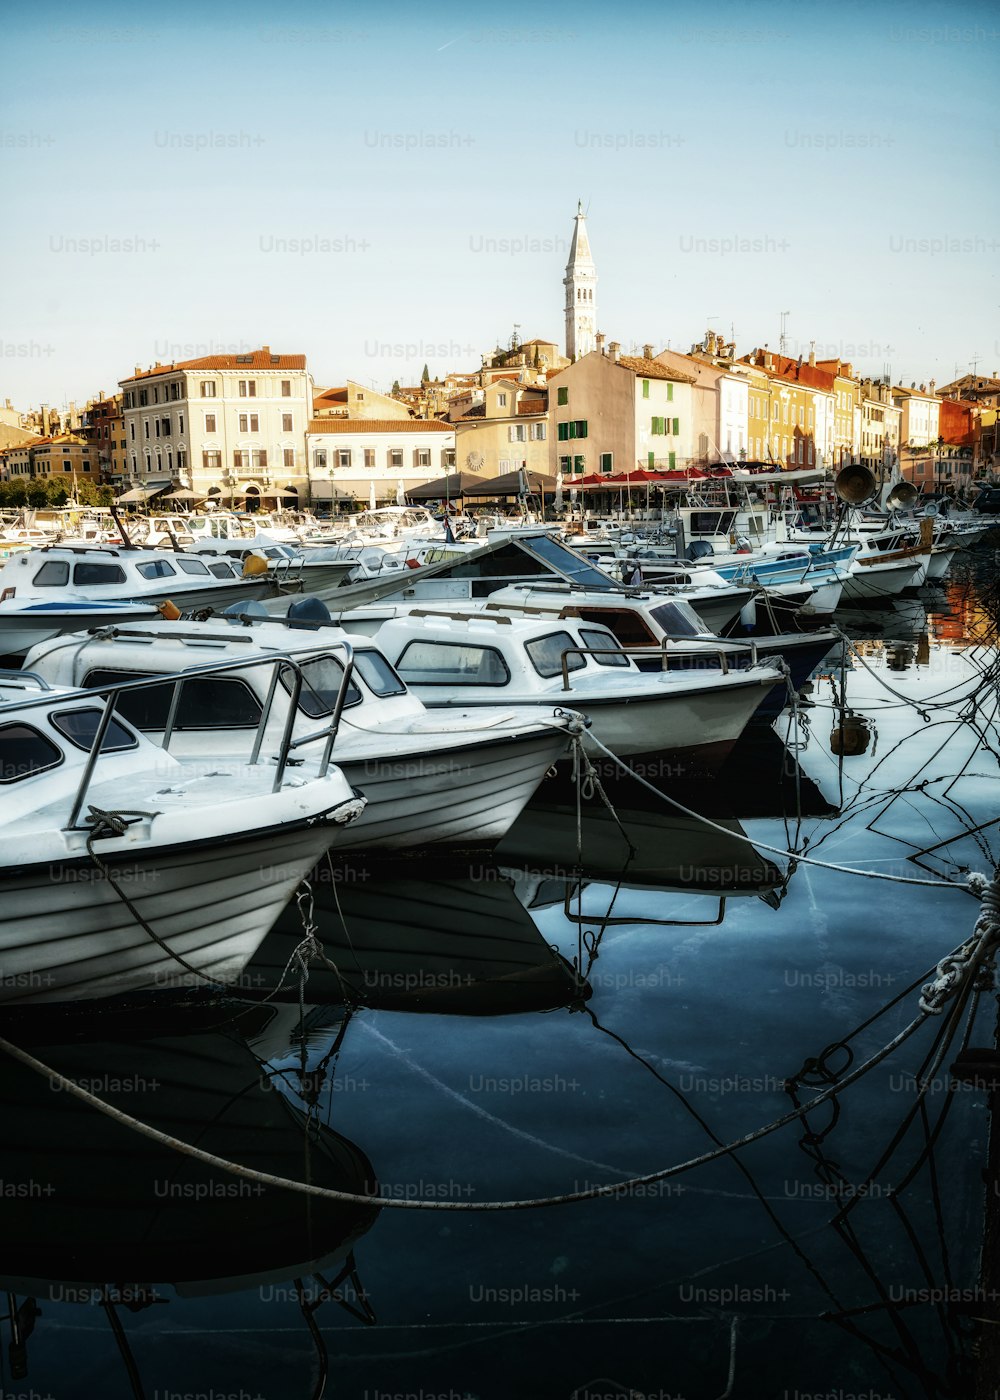 크로아티아의 Rovinj의 아름다운 낭만적 인 구시 가지. 크로아티아 유럽의 동쪽 이스트리아 반도에 위치한 해안 도시 로비니는 크로아티아의 유명한 여행지입니다.